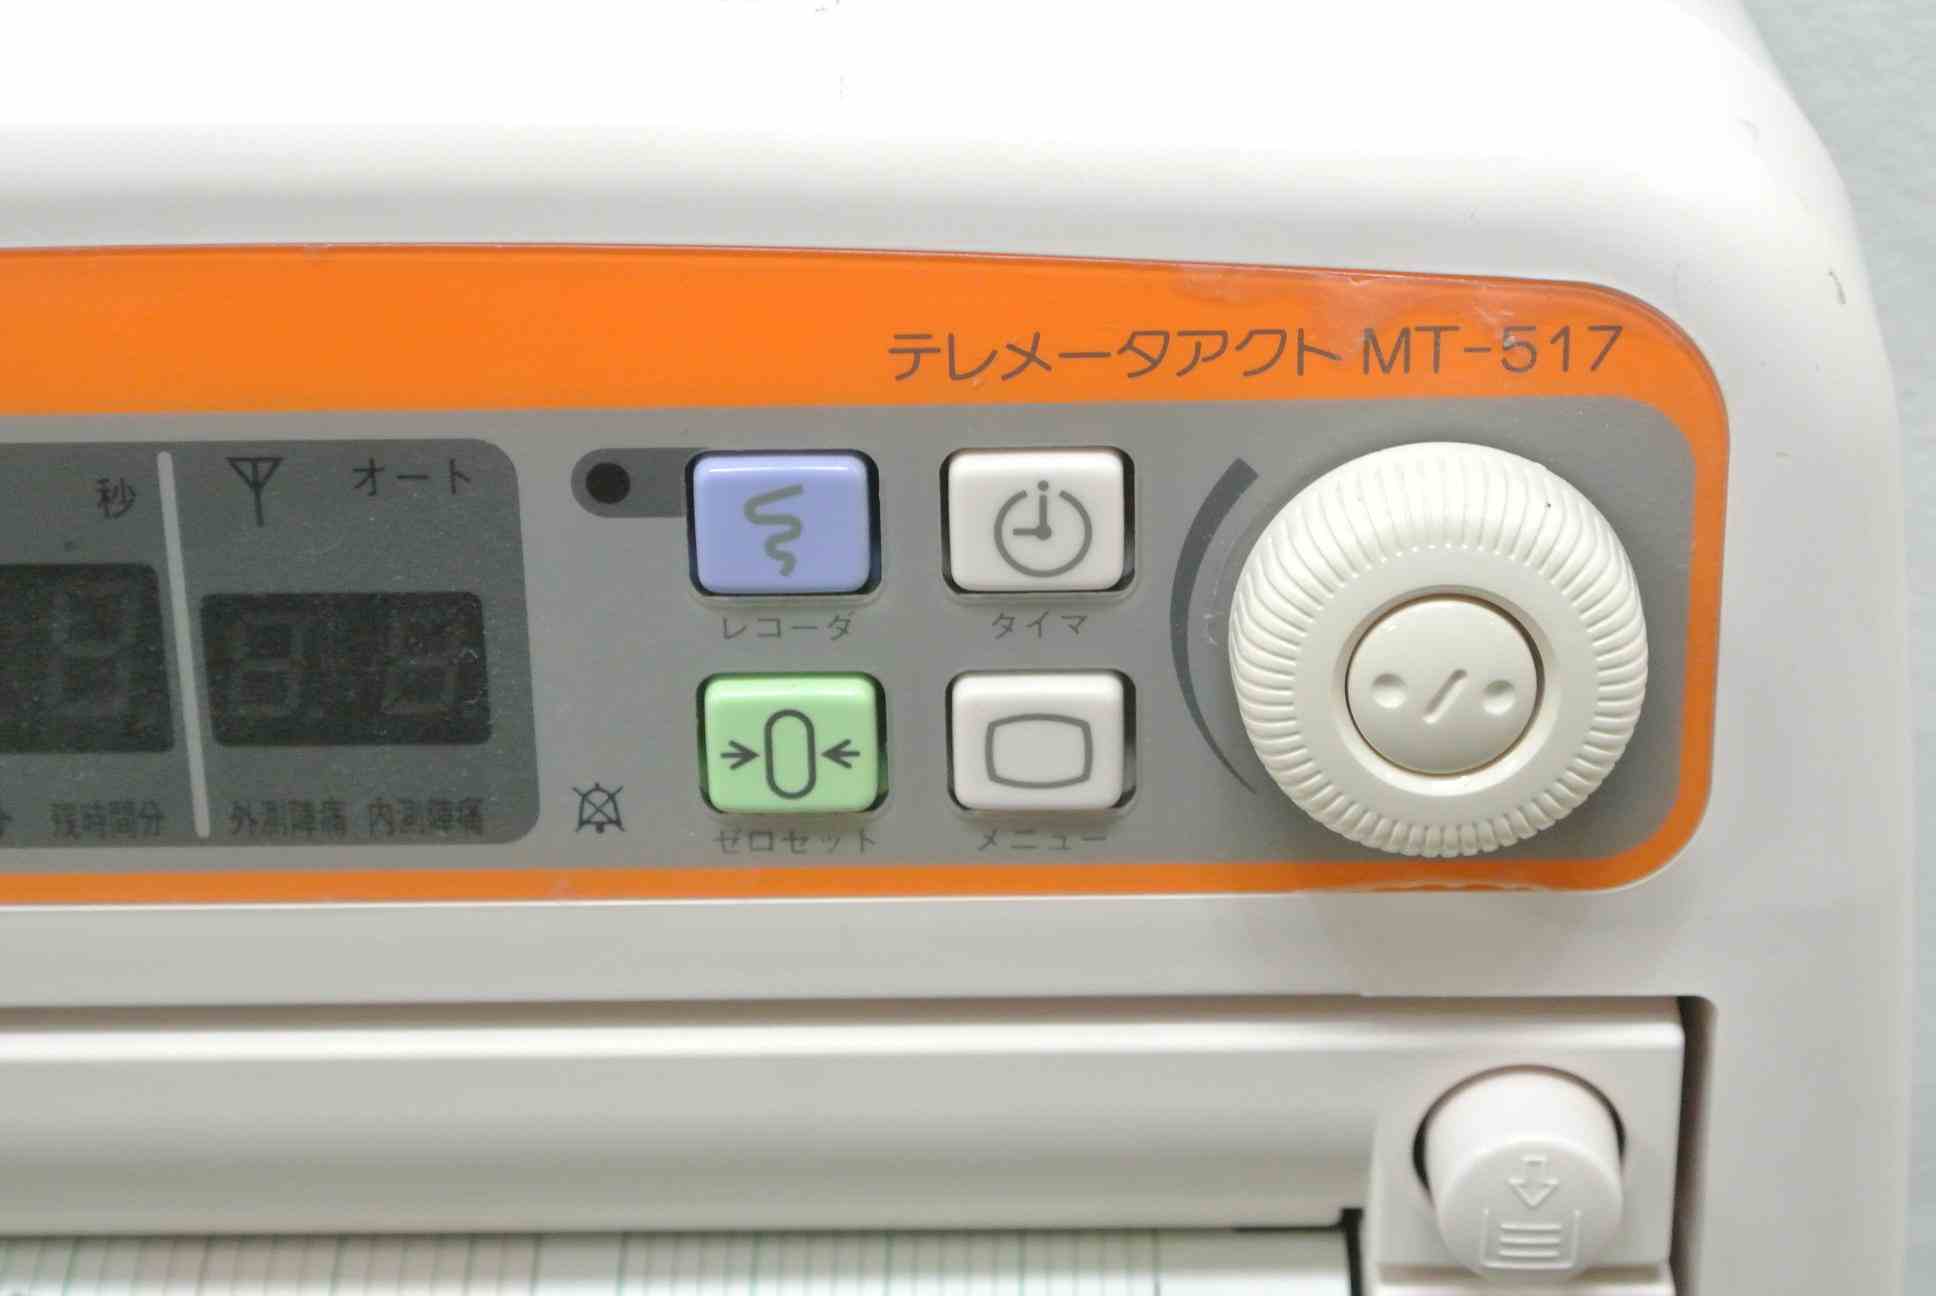 産婦人科機器|トーイツ|分娩監視装置|MT-517|中古医療機器 エム・キャスト|